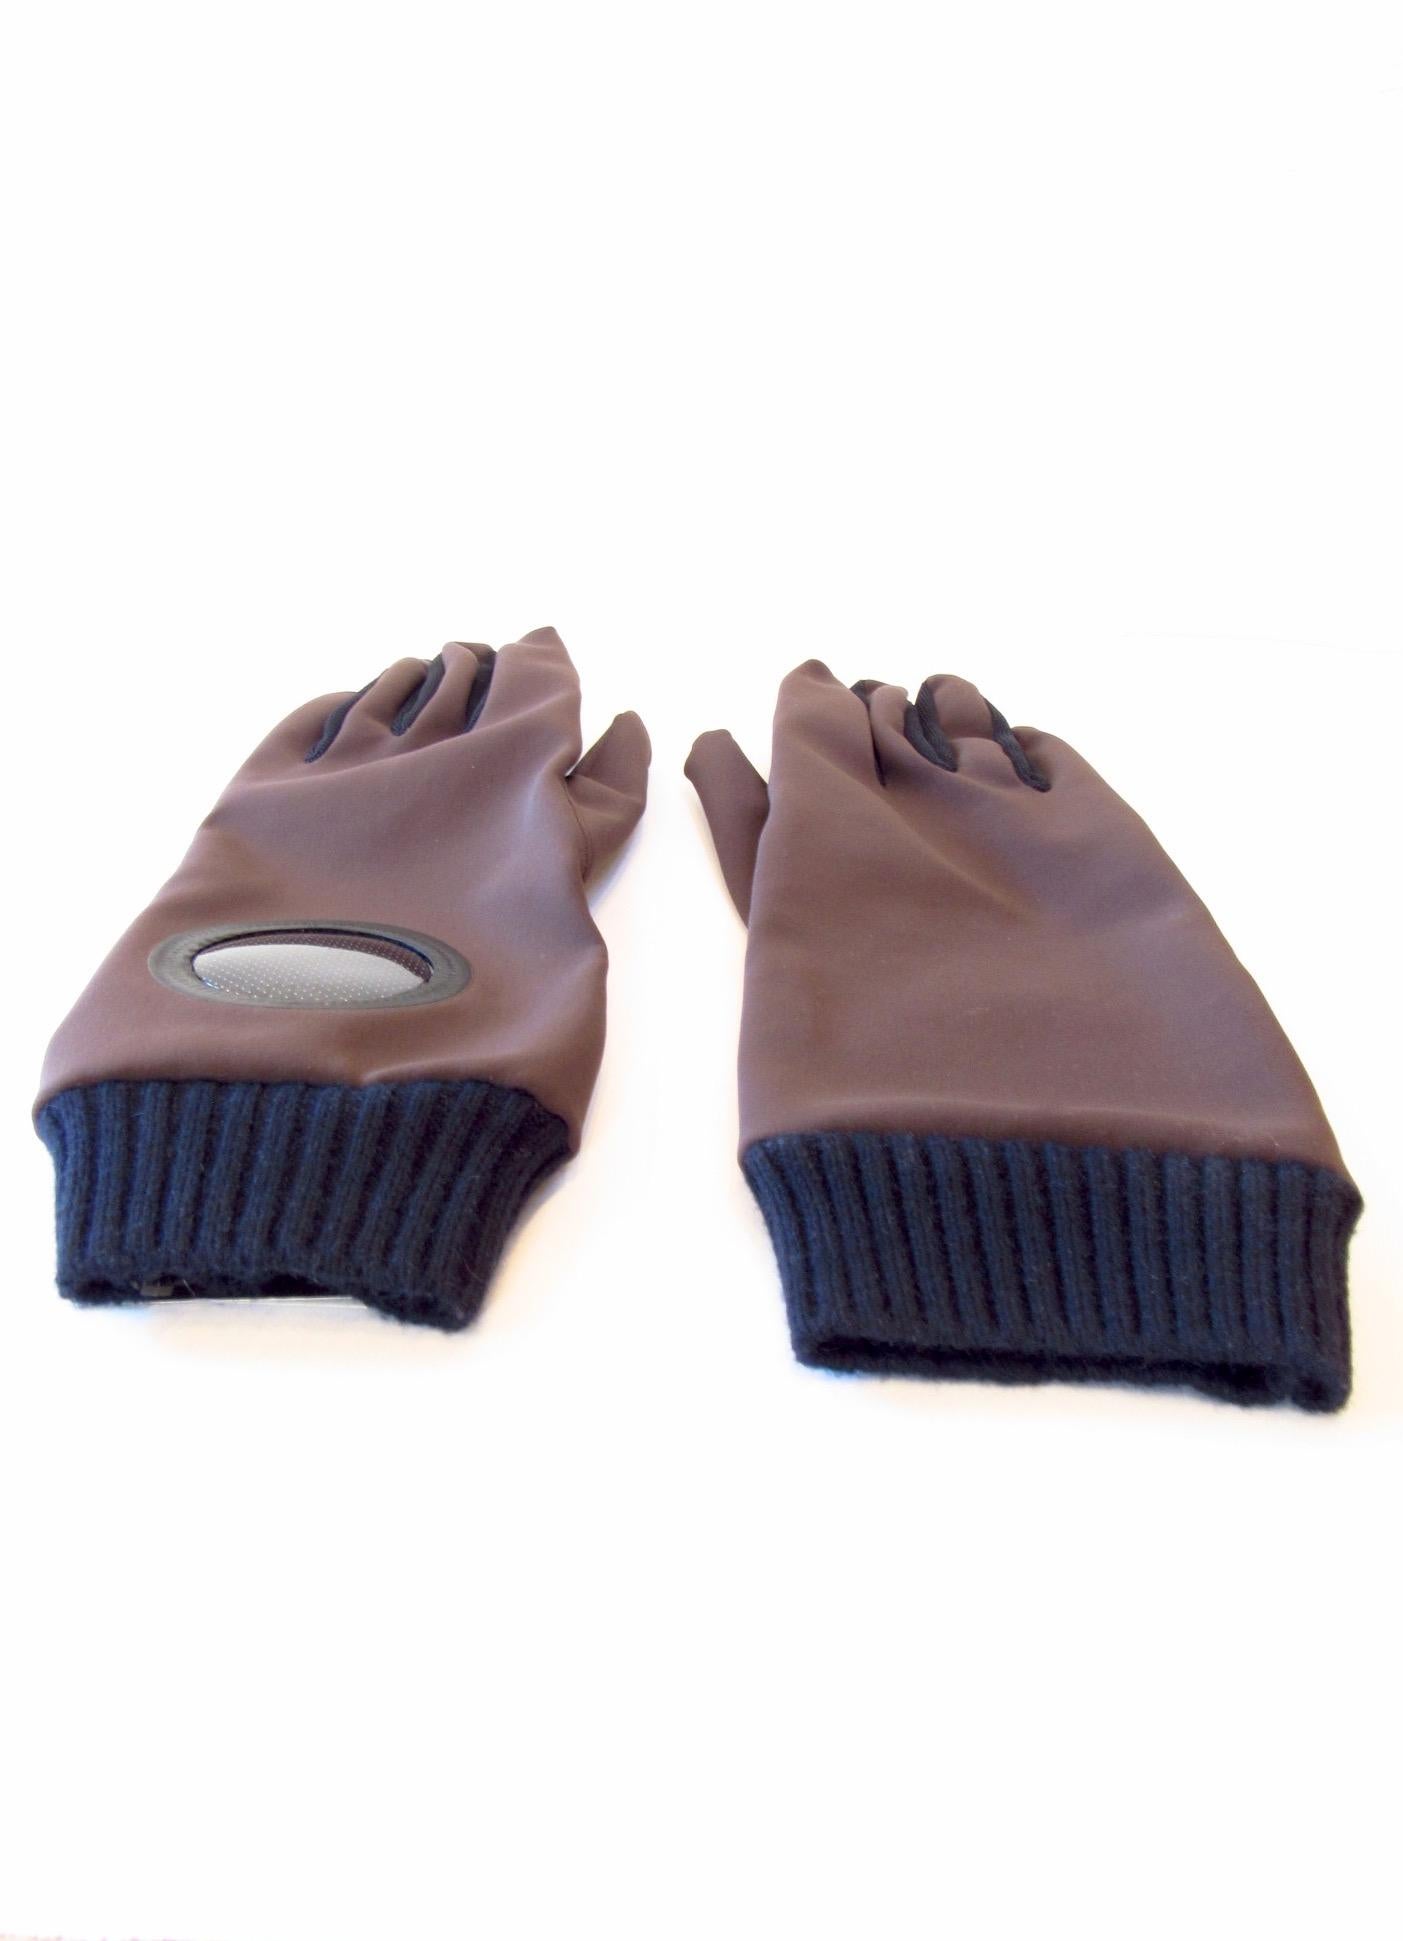 Undercover Nylon Gloves   For Sale 1